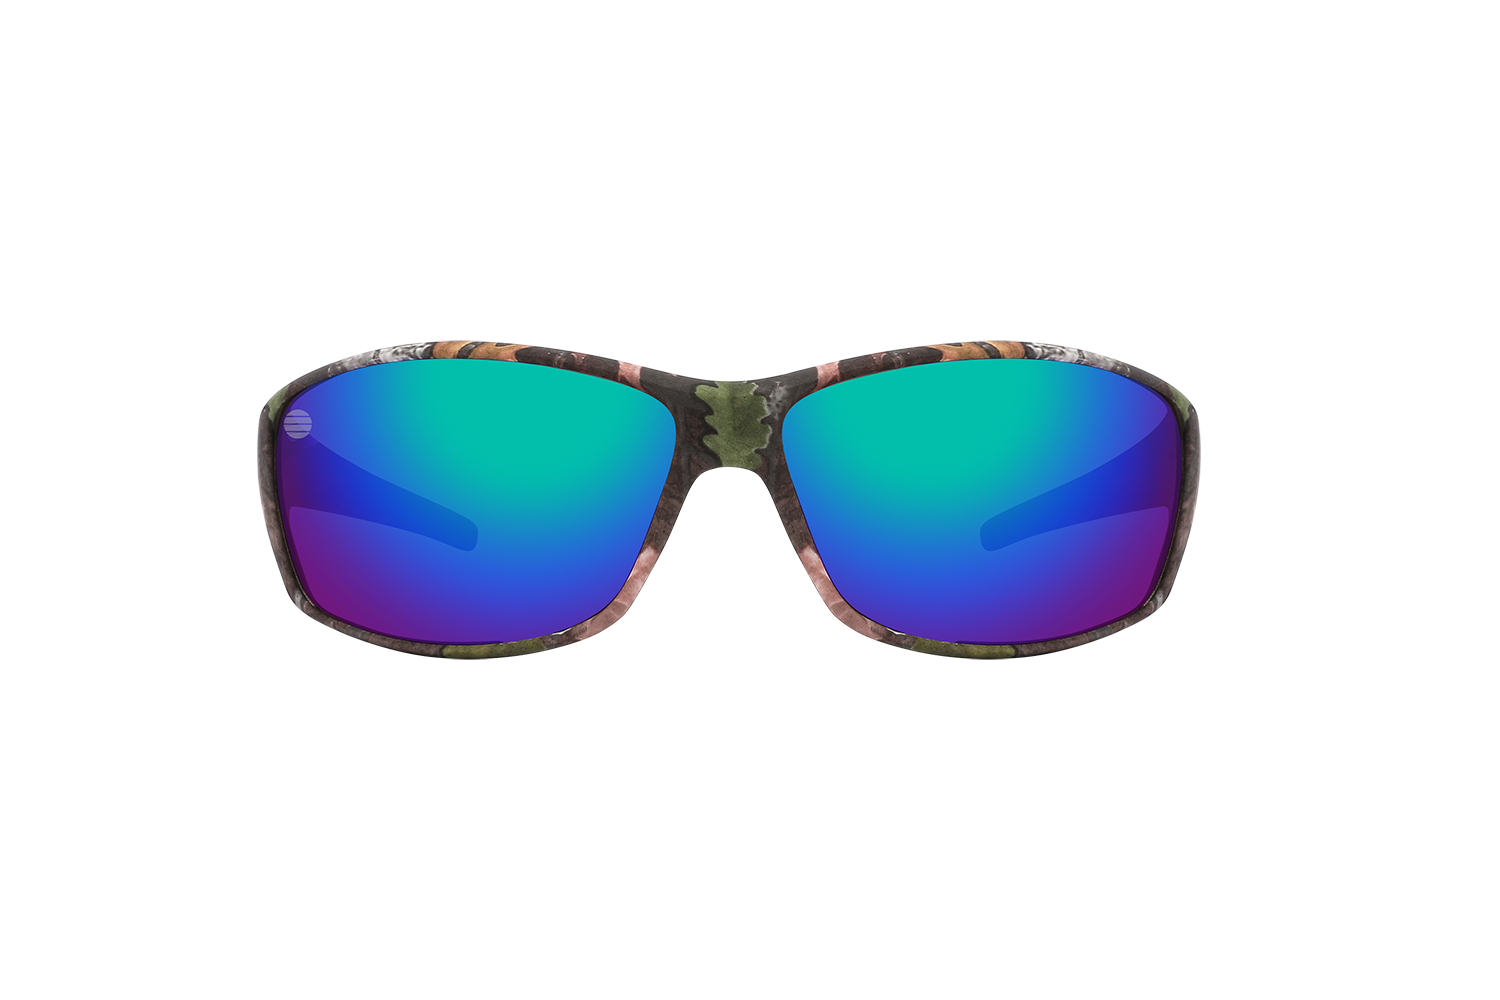 Sunglasses Eyewear – SolarX Camouflage